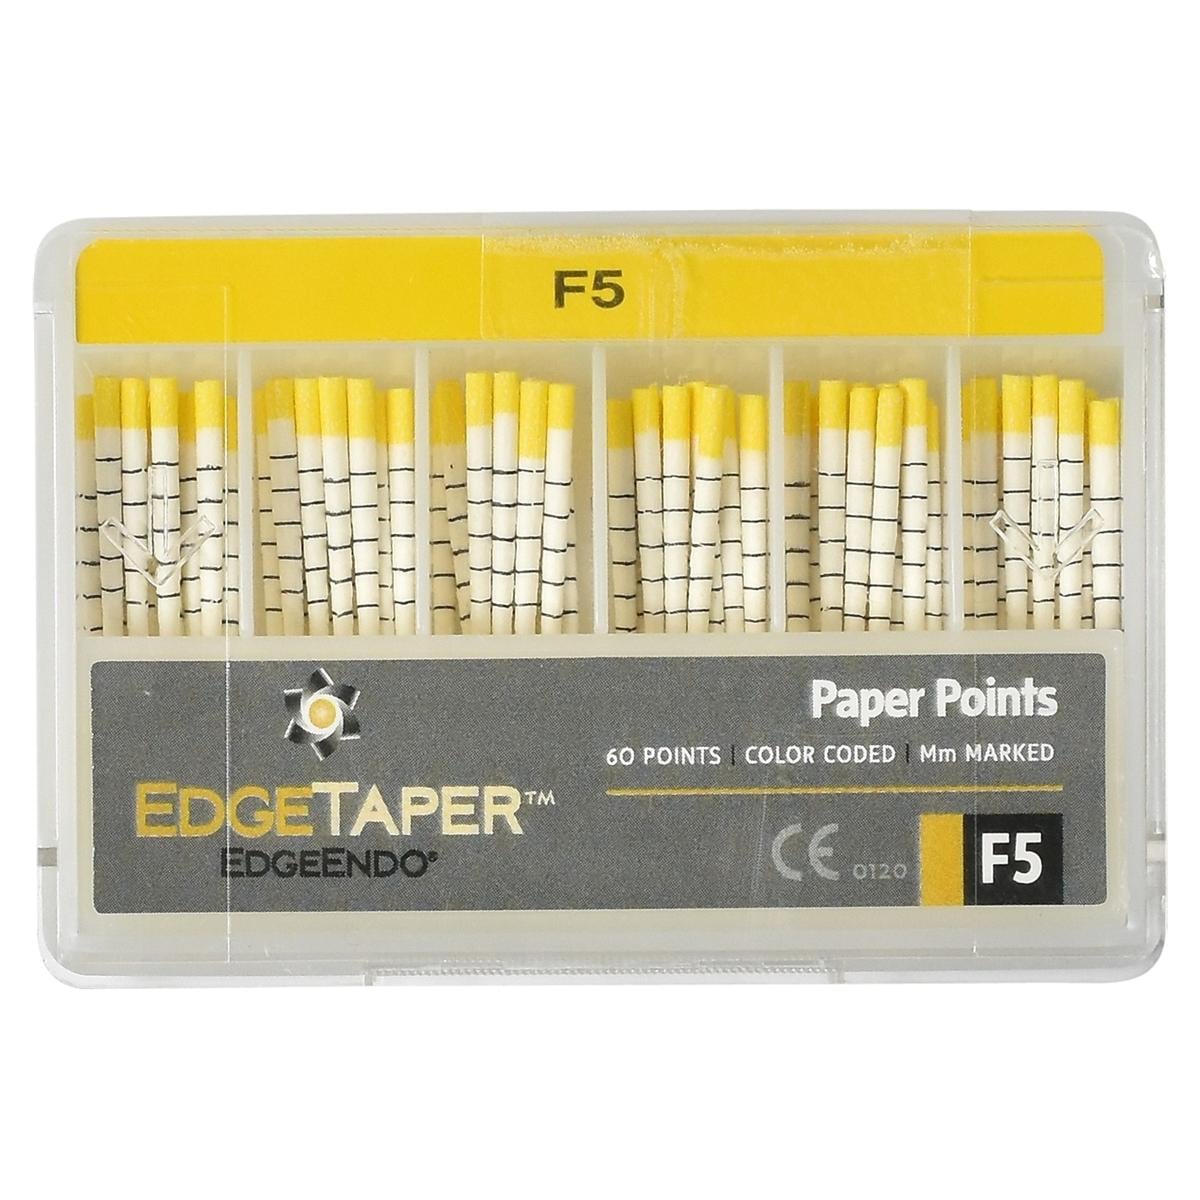 EdgeTaper Paper Point - F5